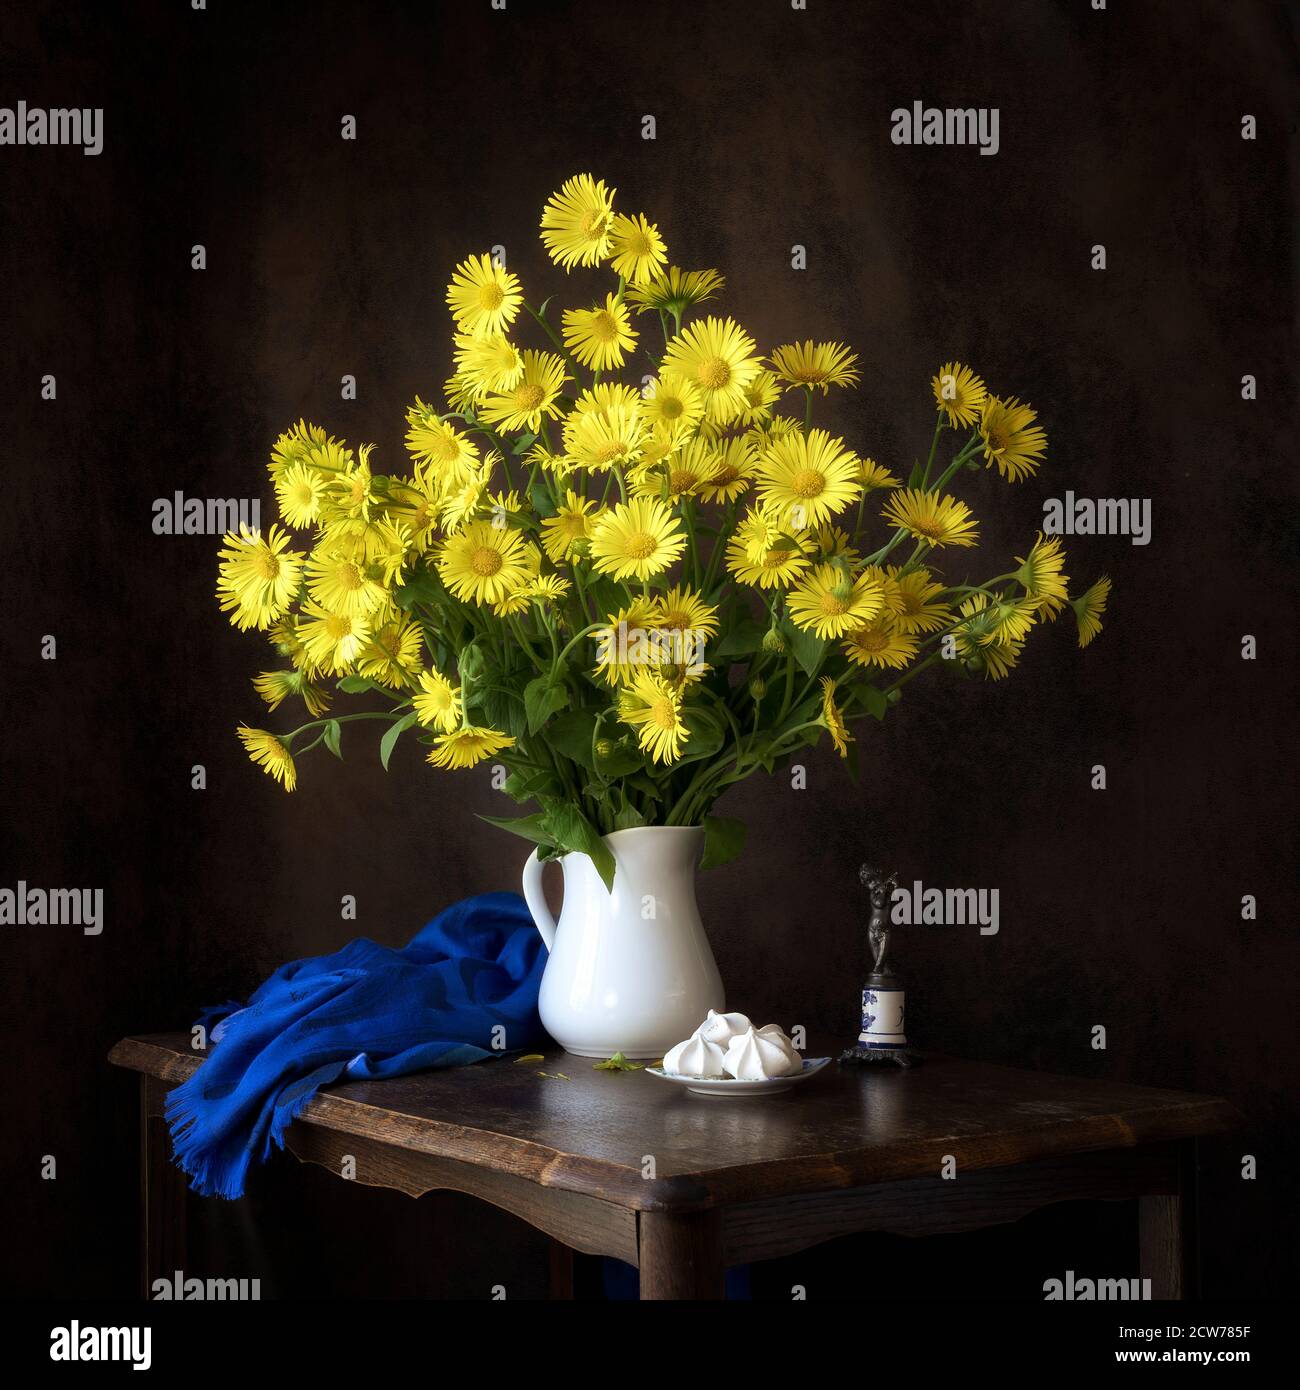 Frühling Stillleben gelb Gänseblümchen Studie mit blauem Schal und Weiße Kanne Stockfoto